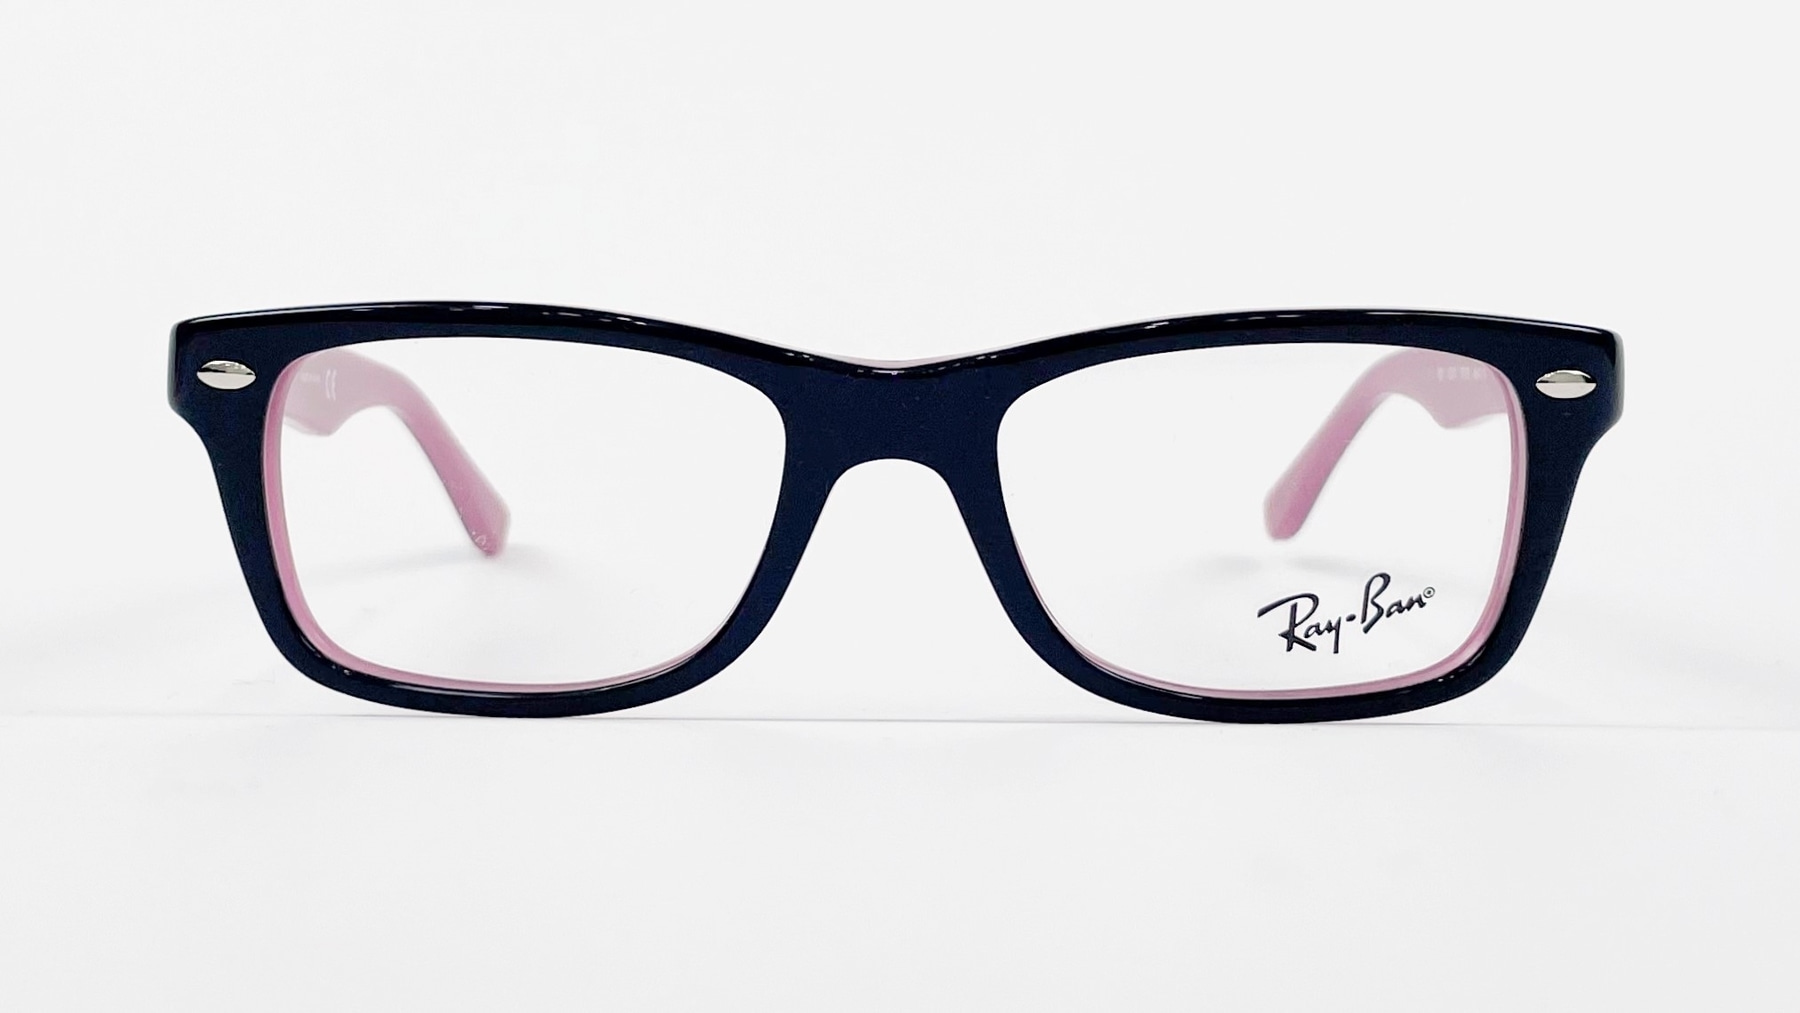 RayBan RB1531 3702, Korean glasses, sunglasses, eyeglasses, glasses